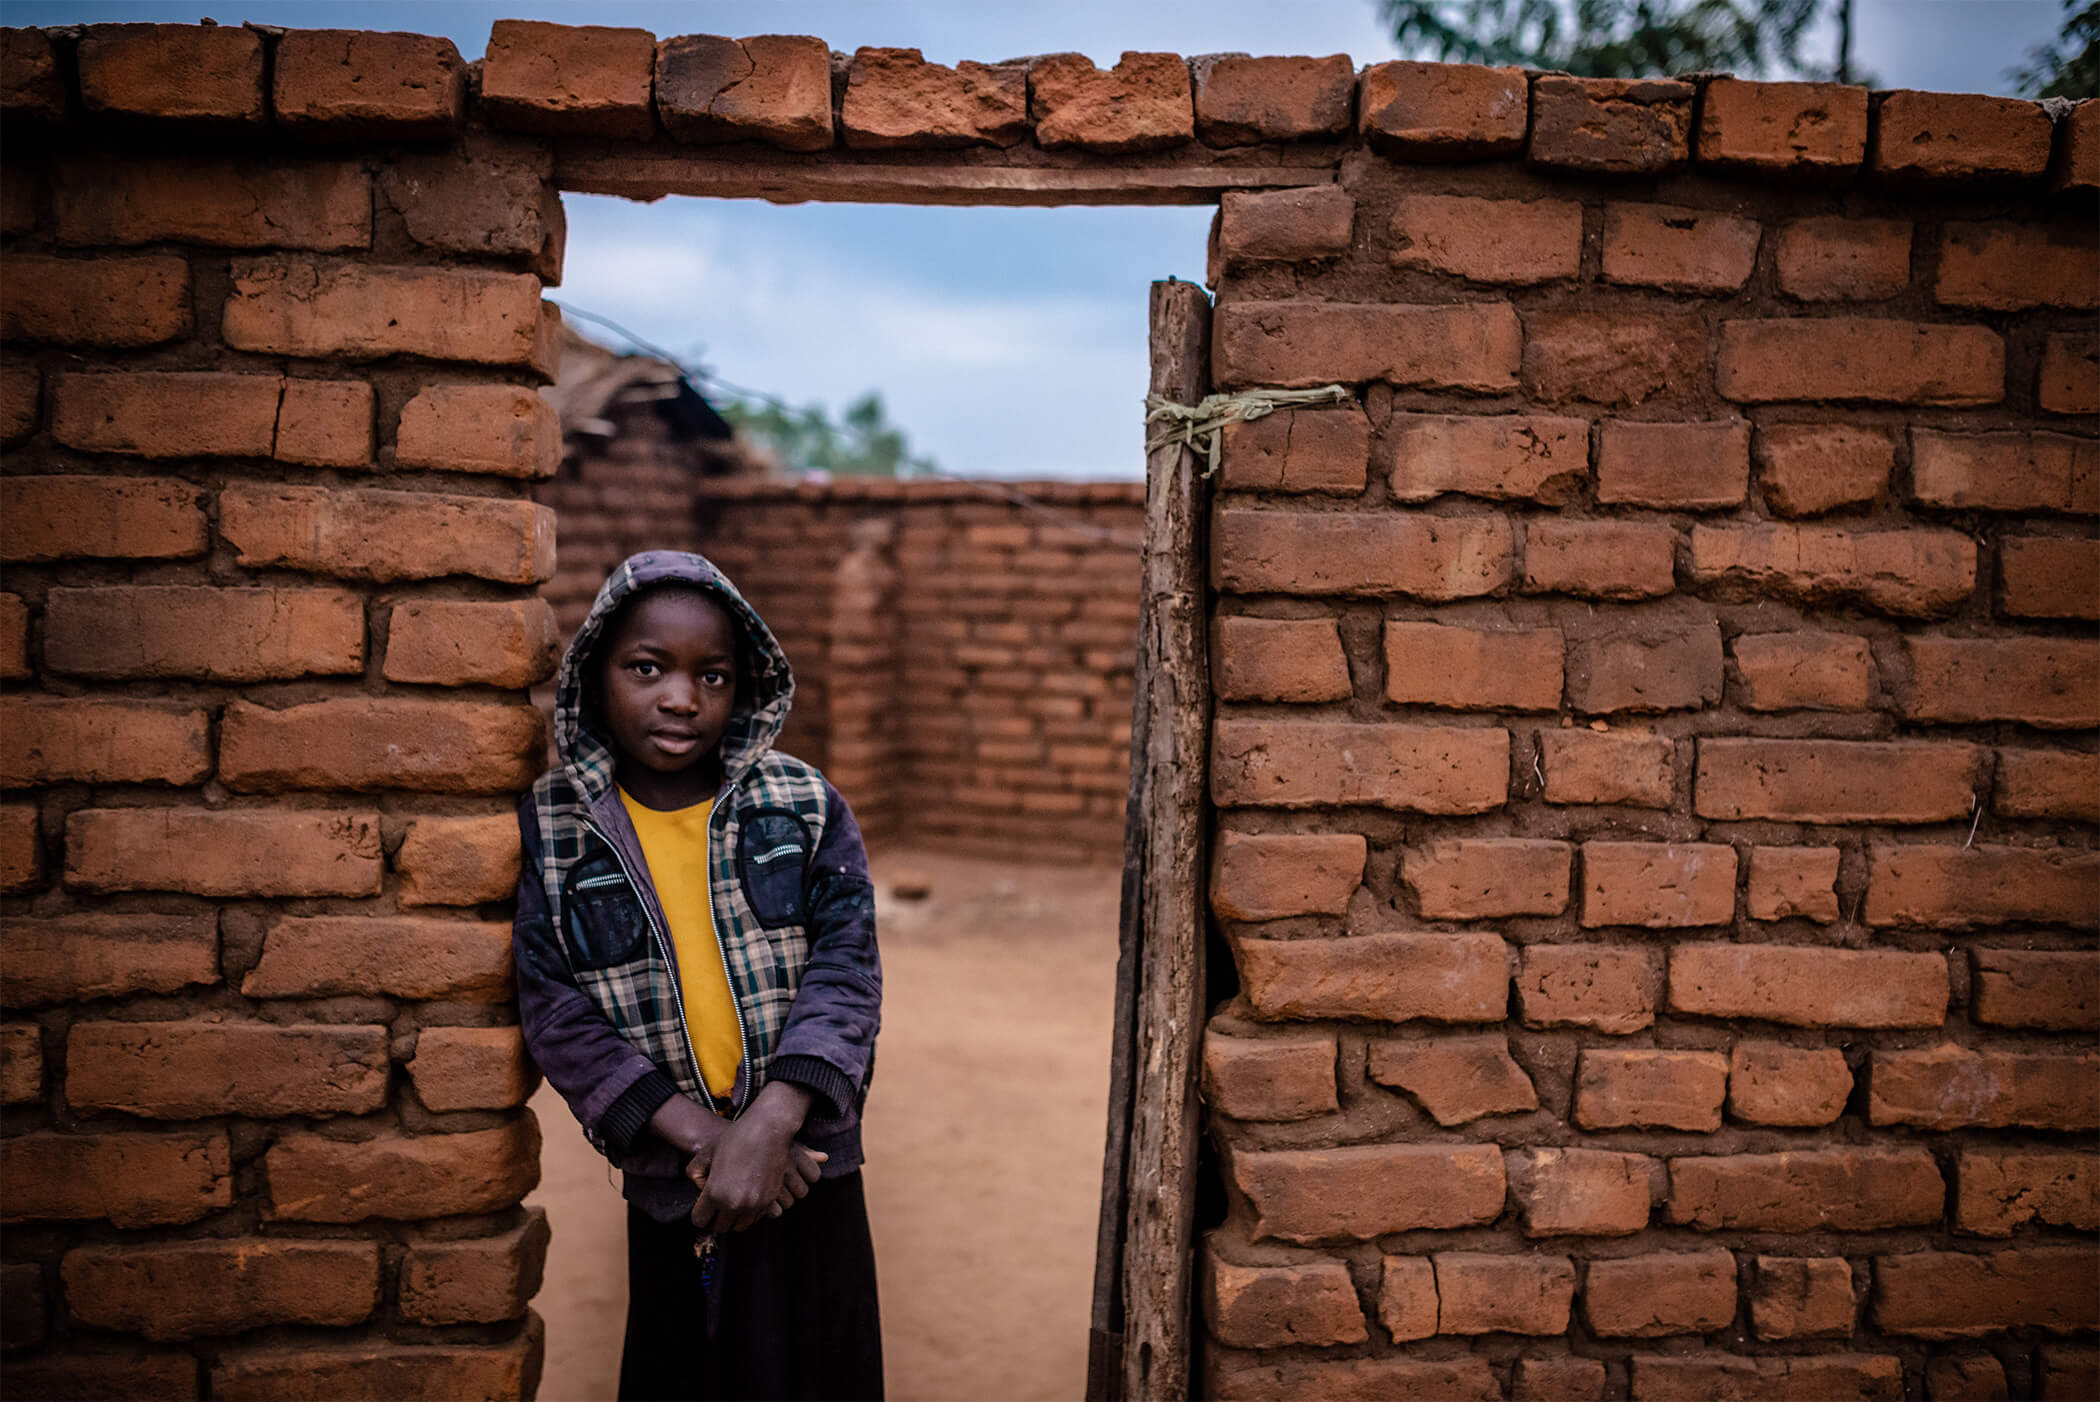 African boy leans against brick doorway